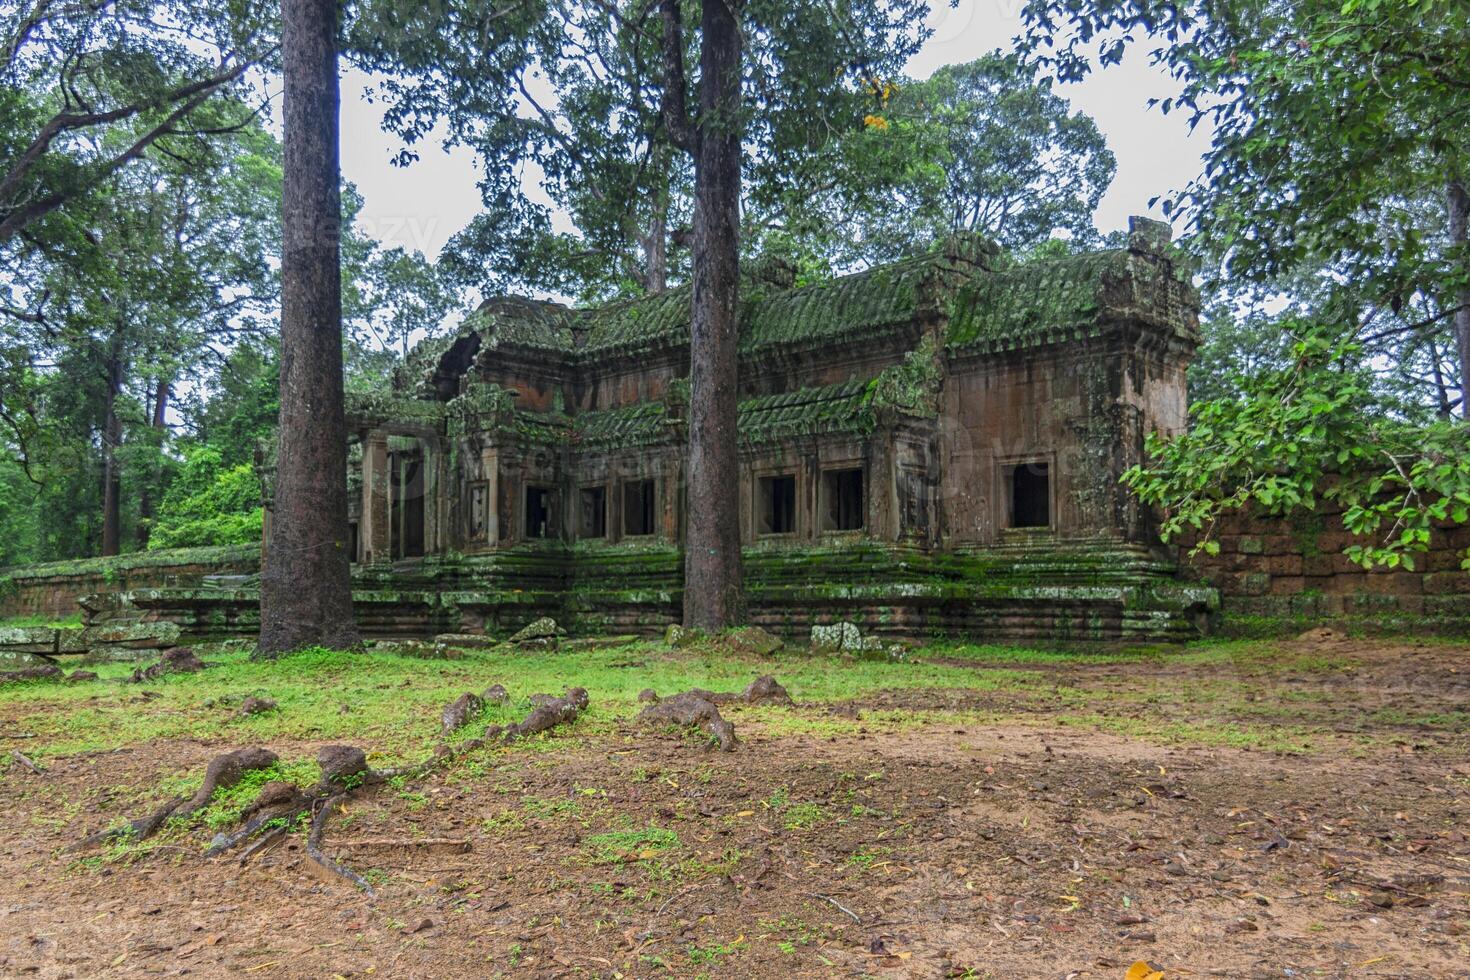 Angkor-Wat-Komplex foto